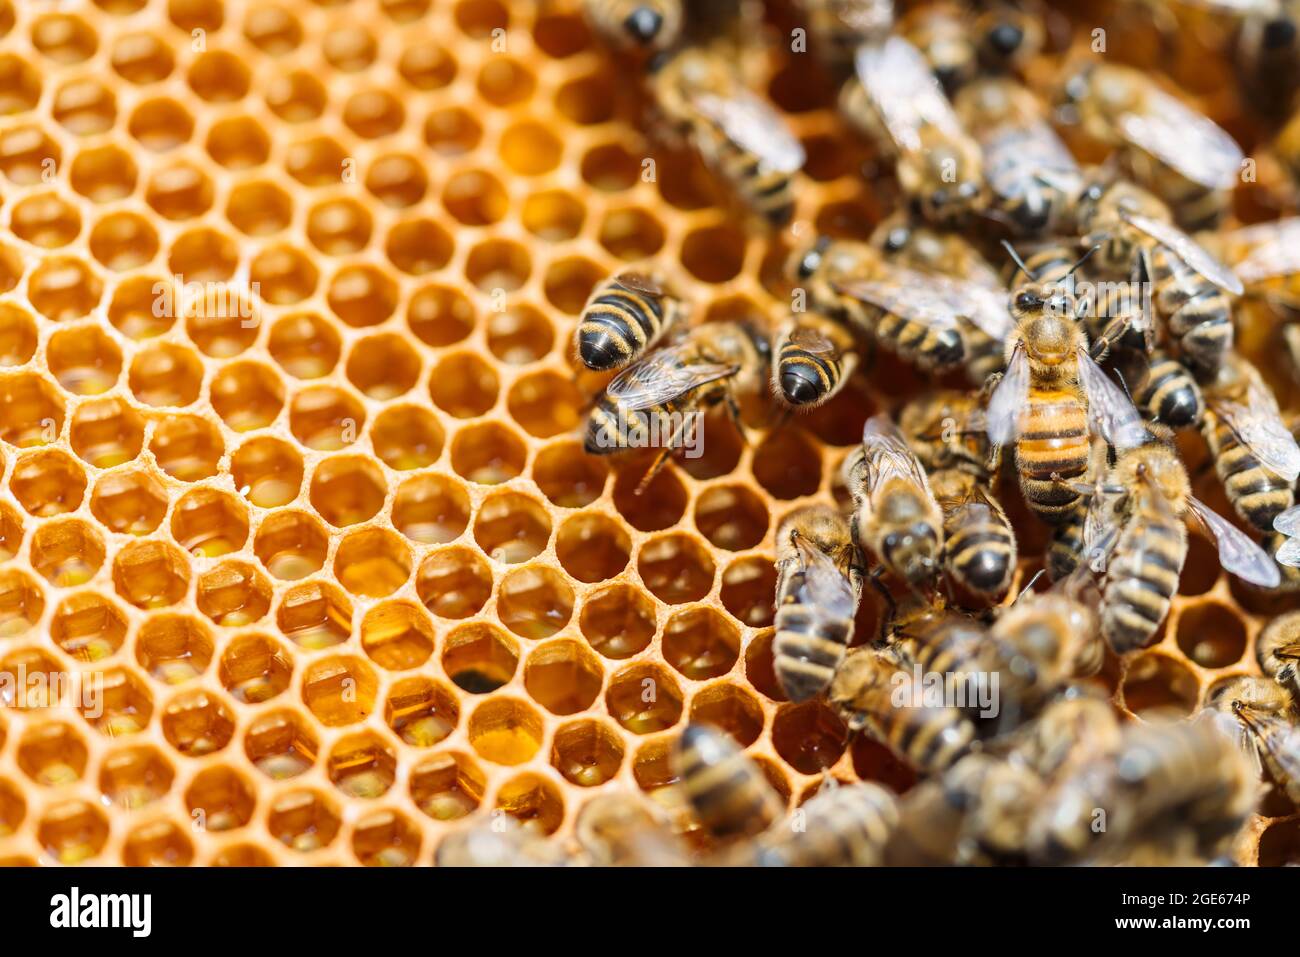 Macro foto di api da lavoro su nidi d'ape. Immagine dell'apicoltura e della produzione del miele Foto Stock